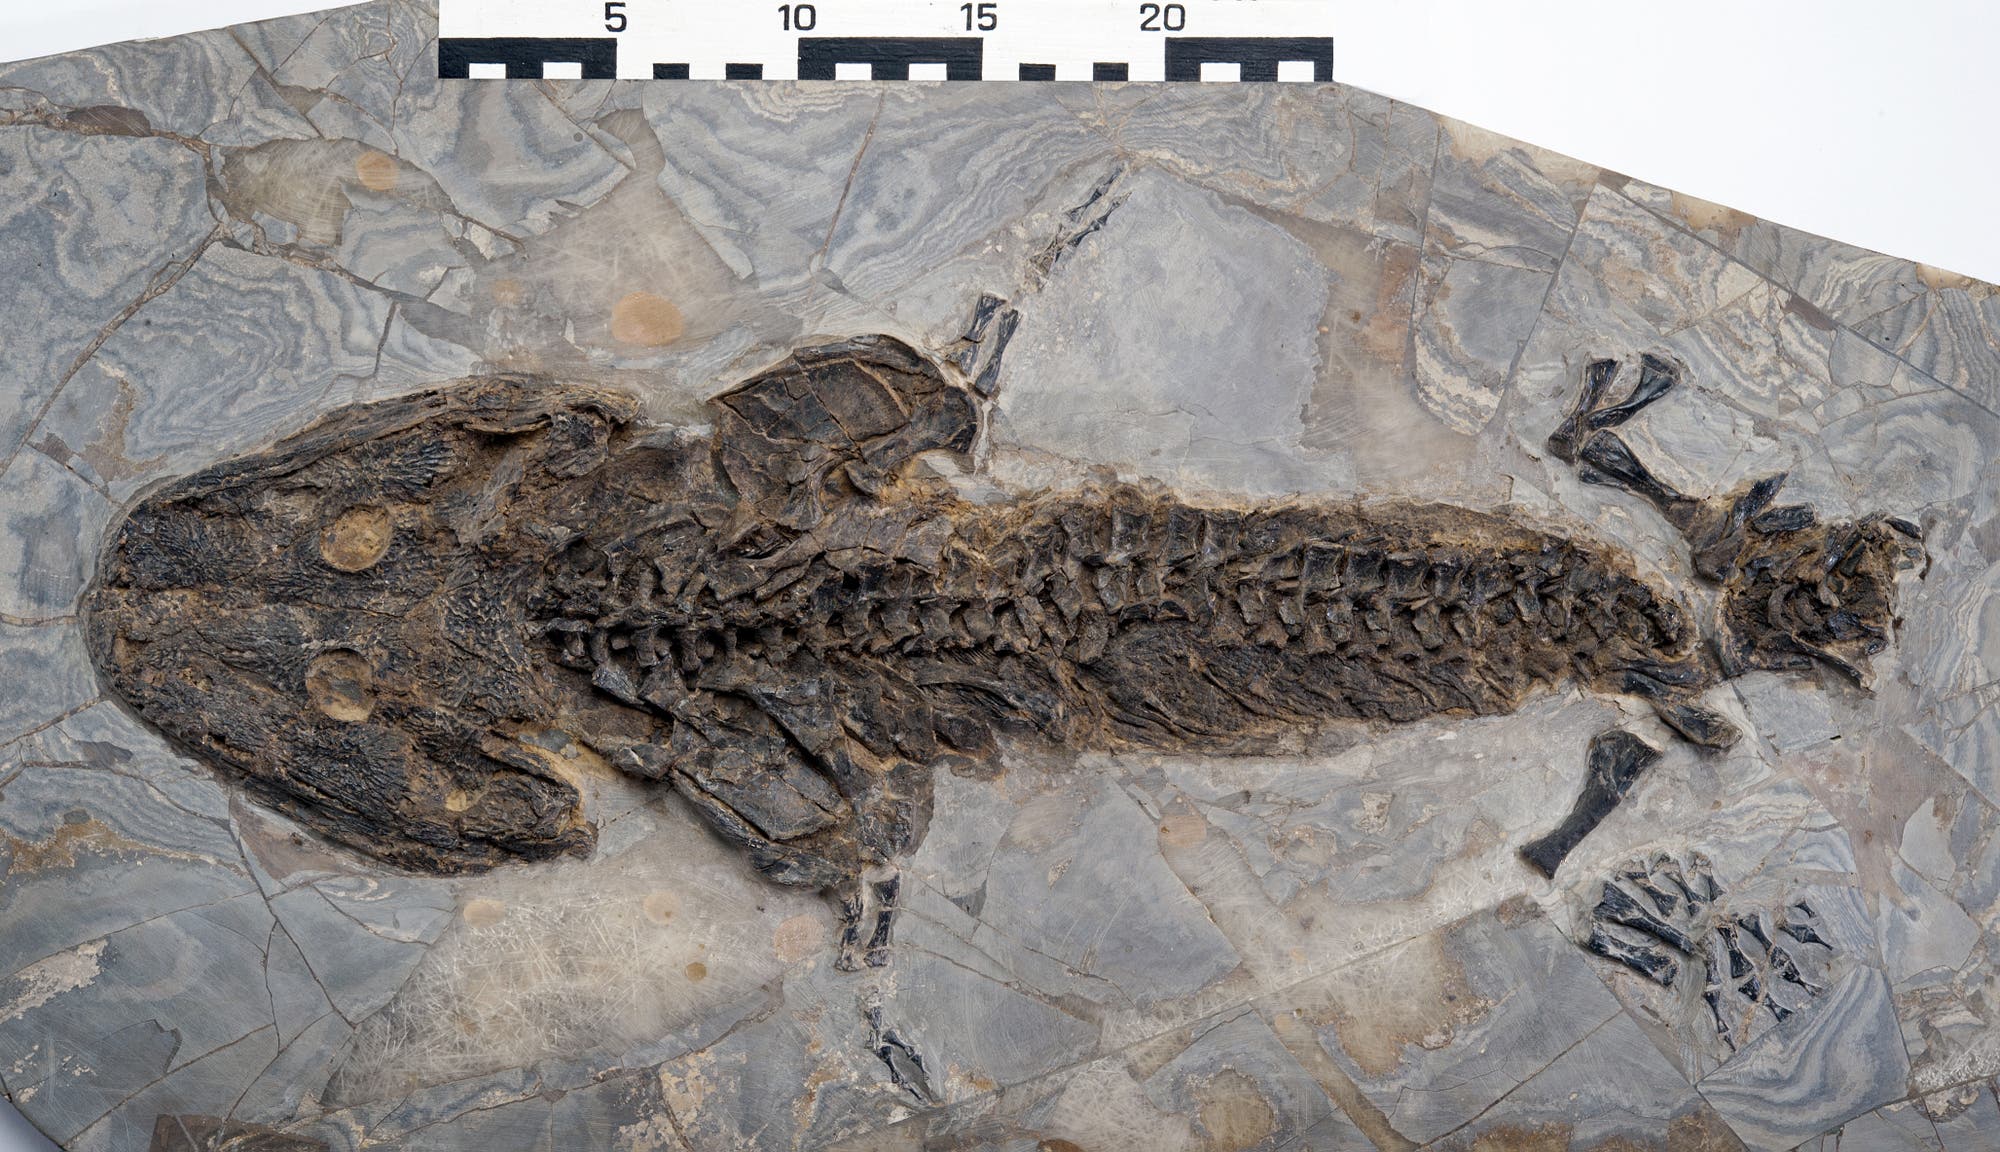 Sclerocephalus-Fossil aus dem Perm